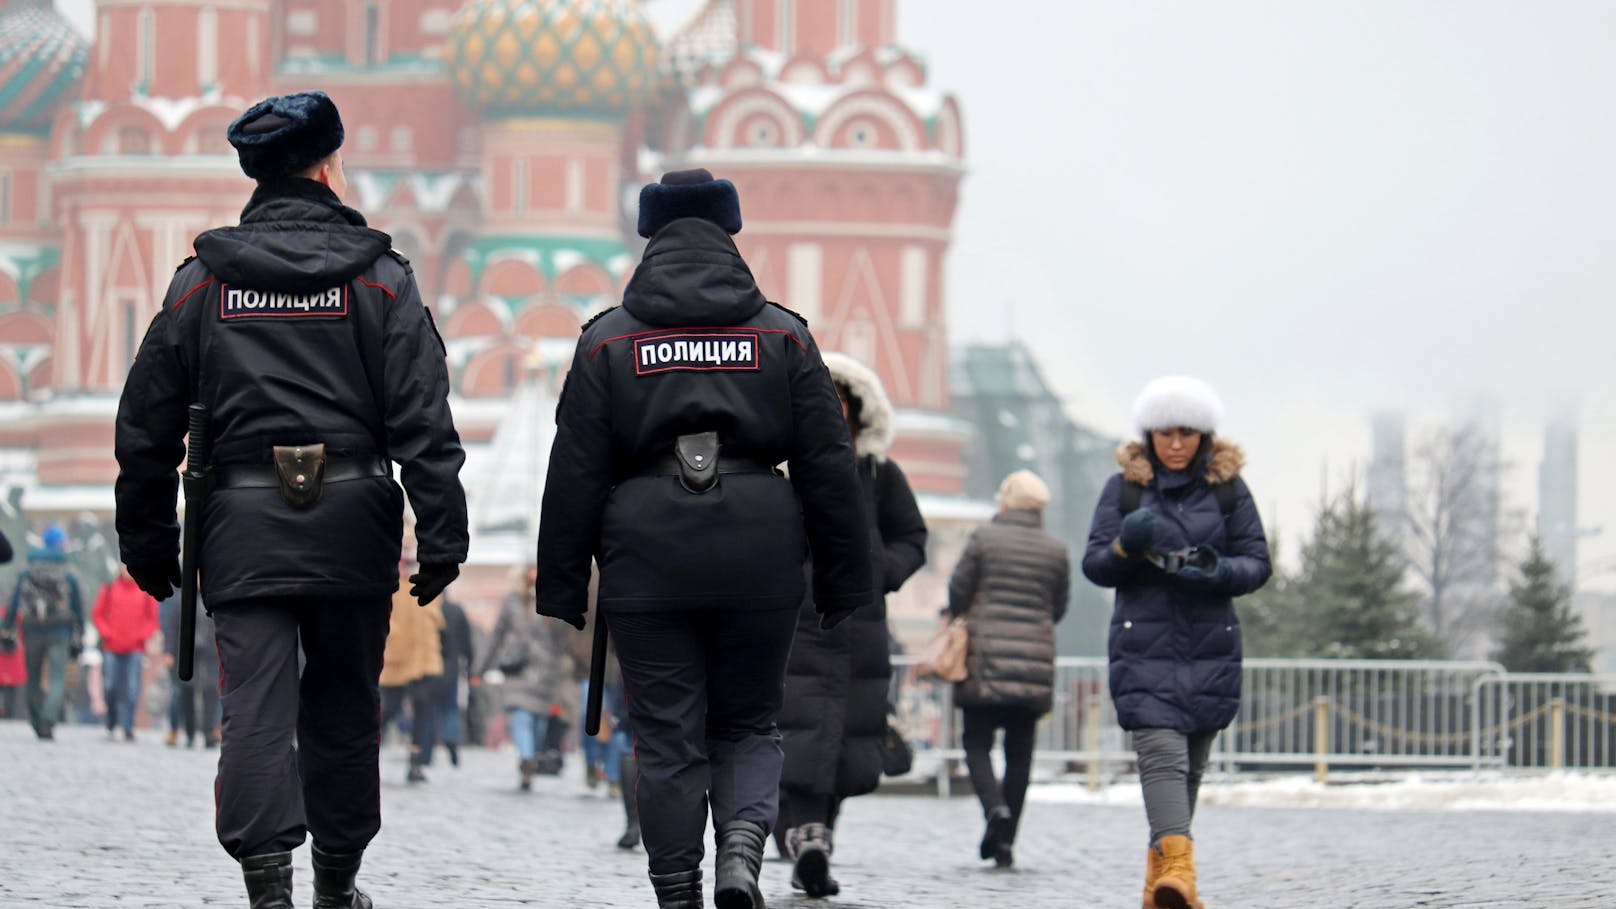 Kreml-kritisches Gedicht bringt Russen 7 Jahre in Haft